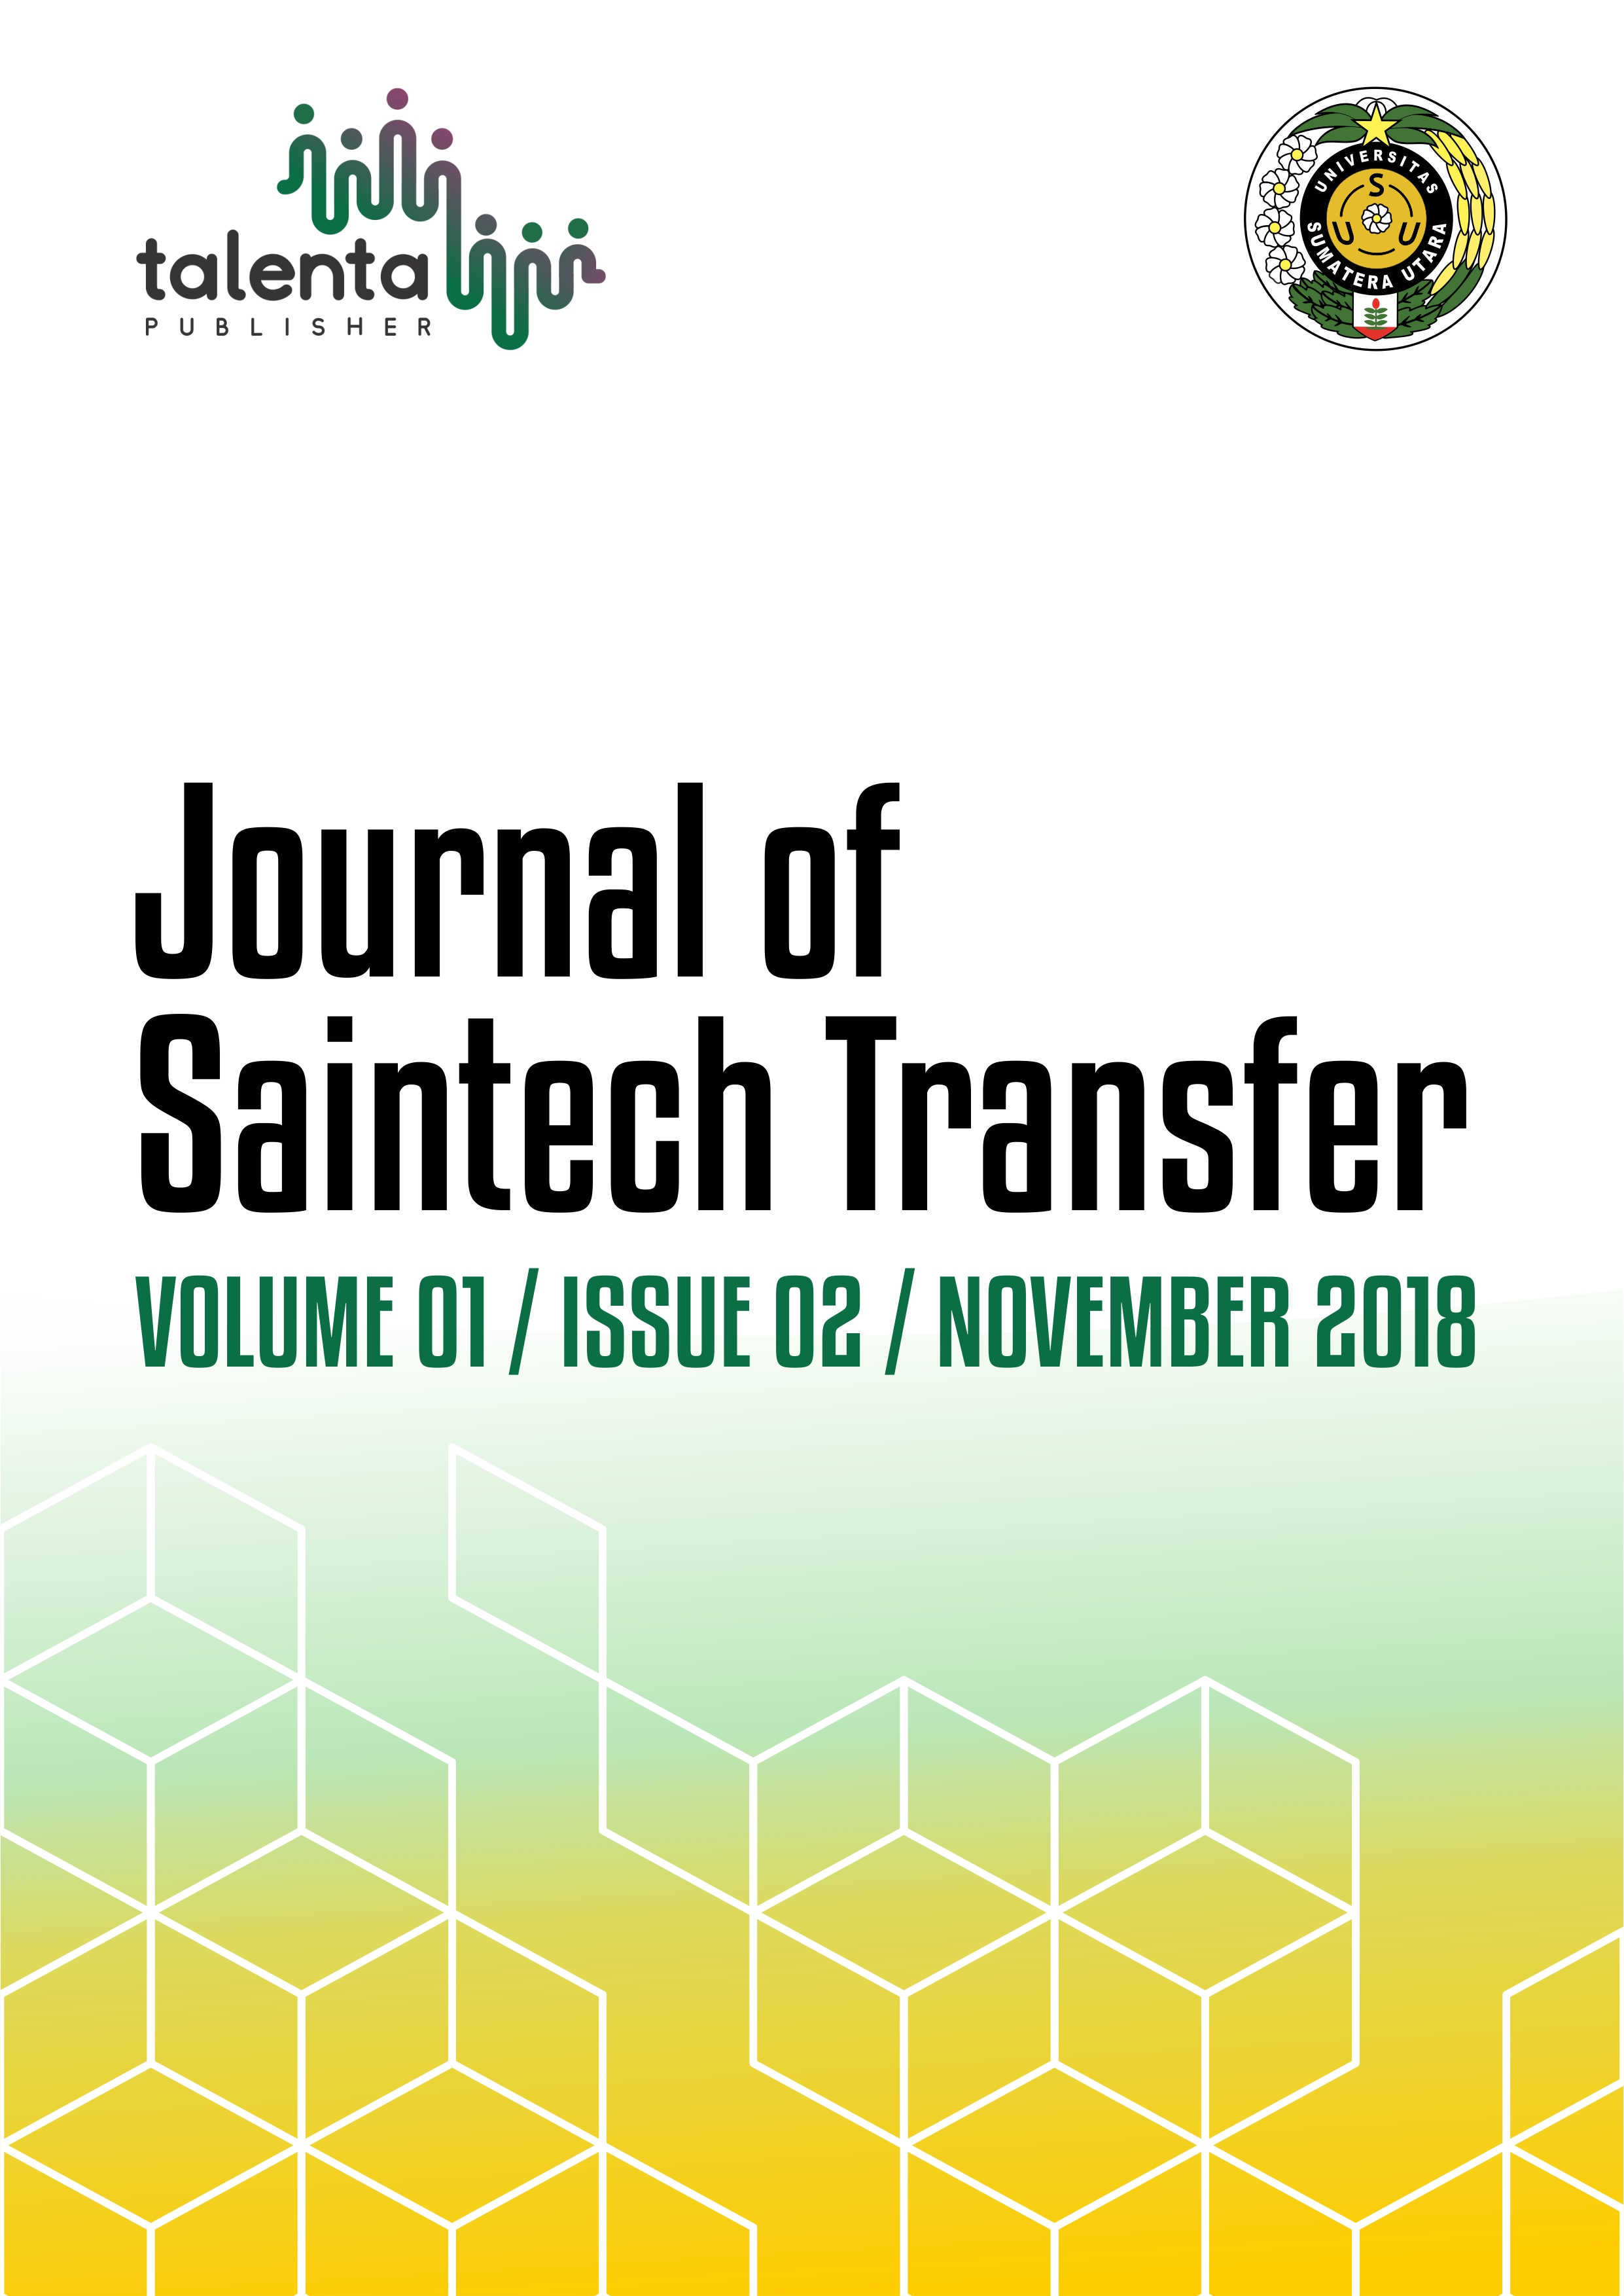 Journal of Saintech Transfer Volume 01 Issue 02